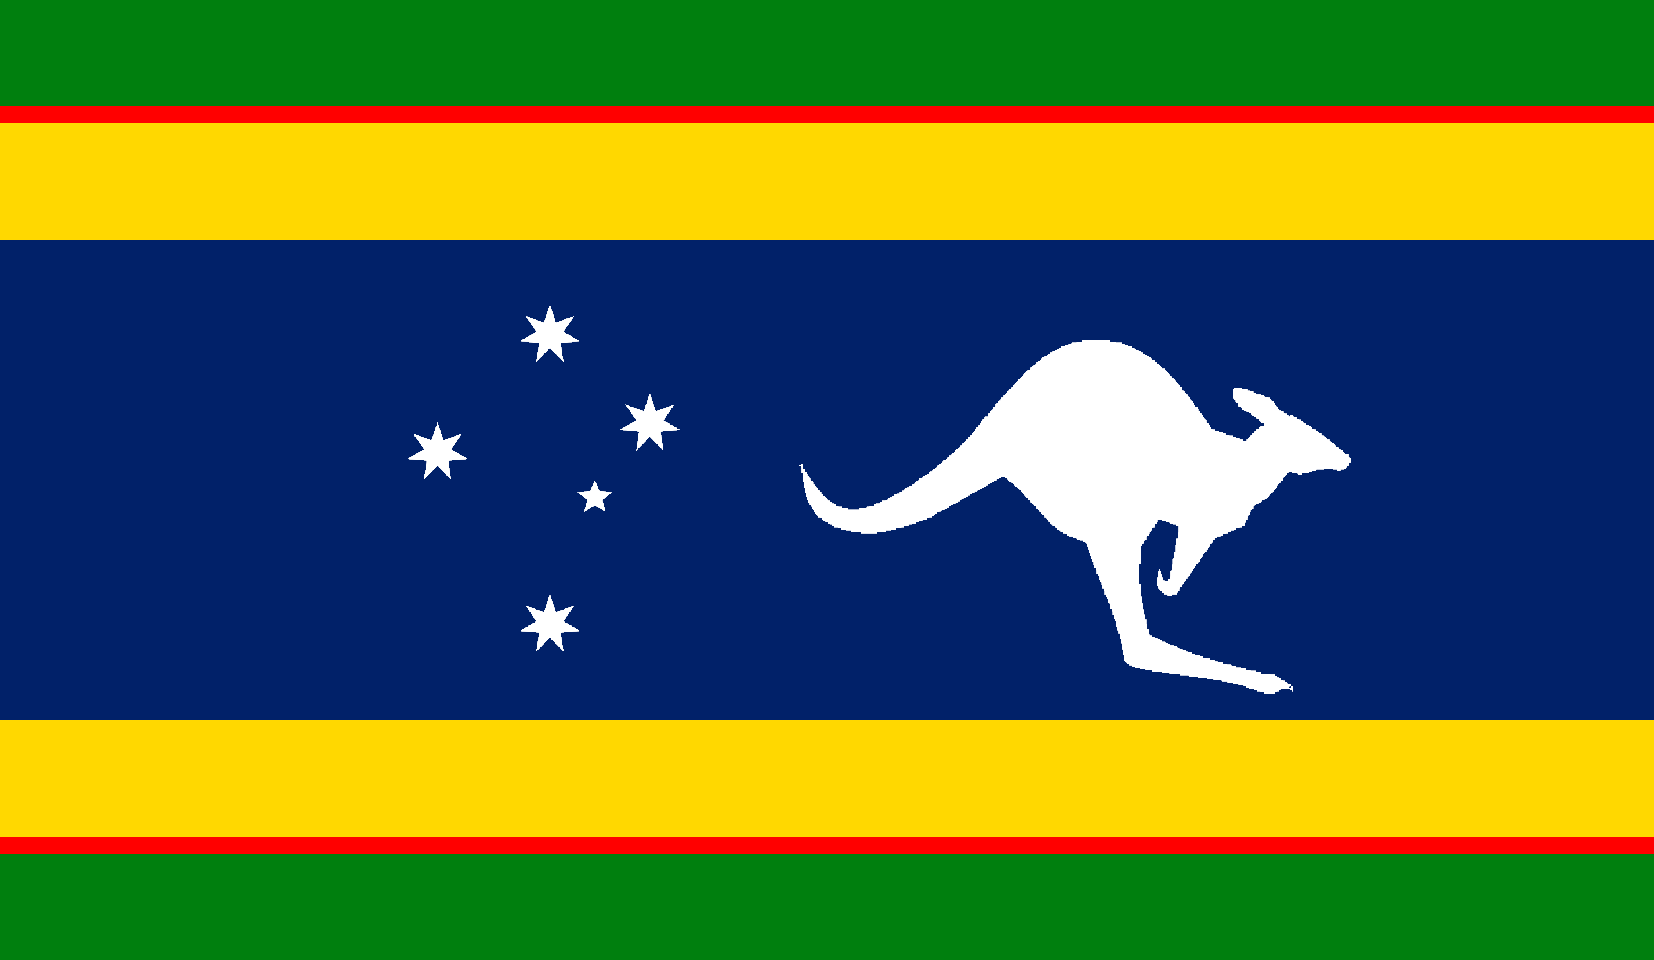 Australia.png